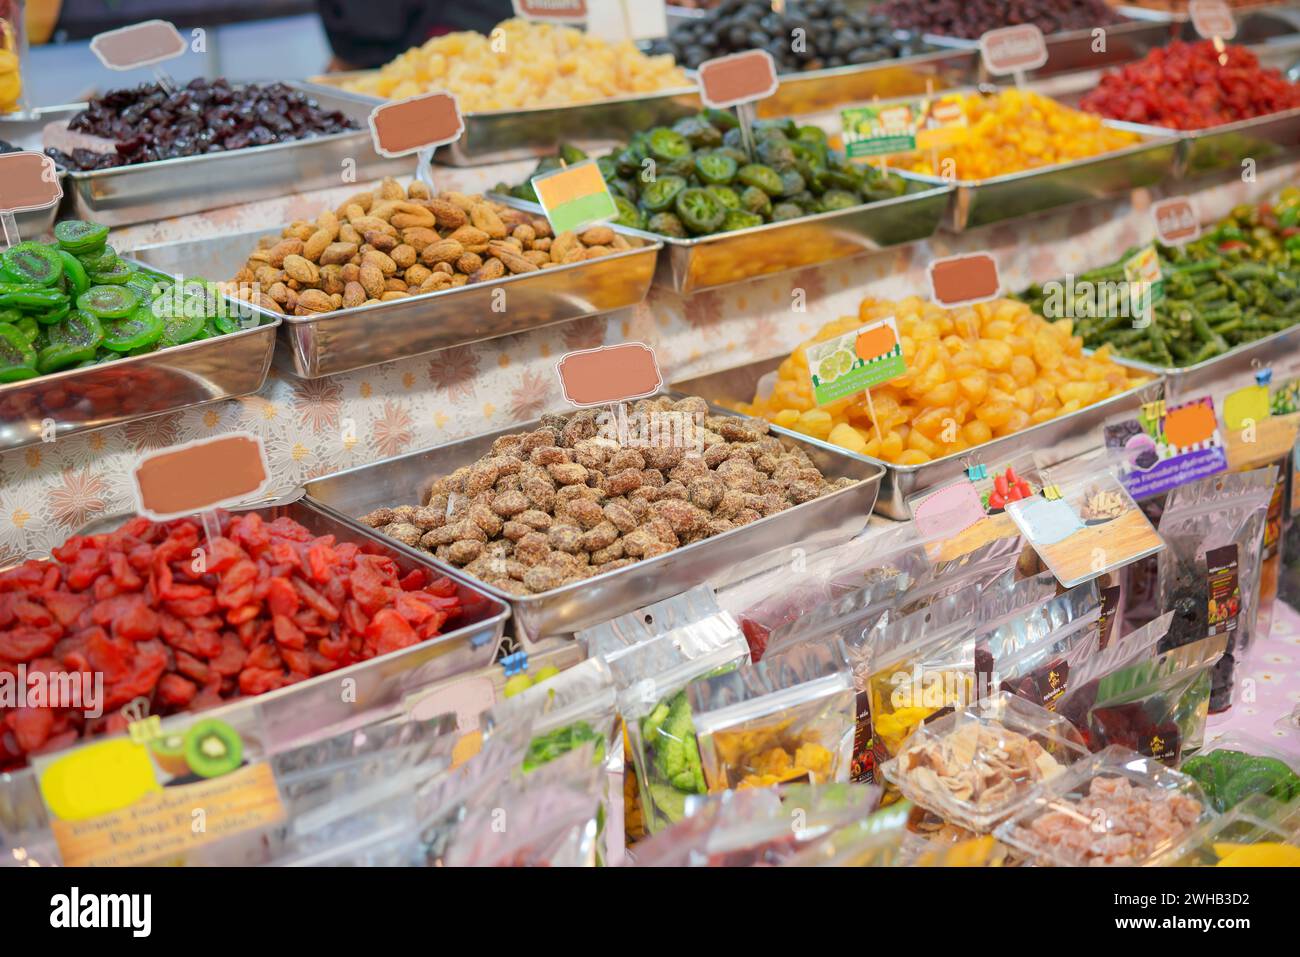 Gamme vibrante et colorée de fruits secs et de noix présentés dans des plateaux en métal sur un marché, soulignant la diversité et l'attrait d'une collation saine optio Banque D'Images